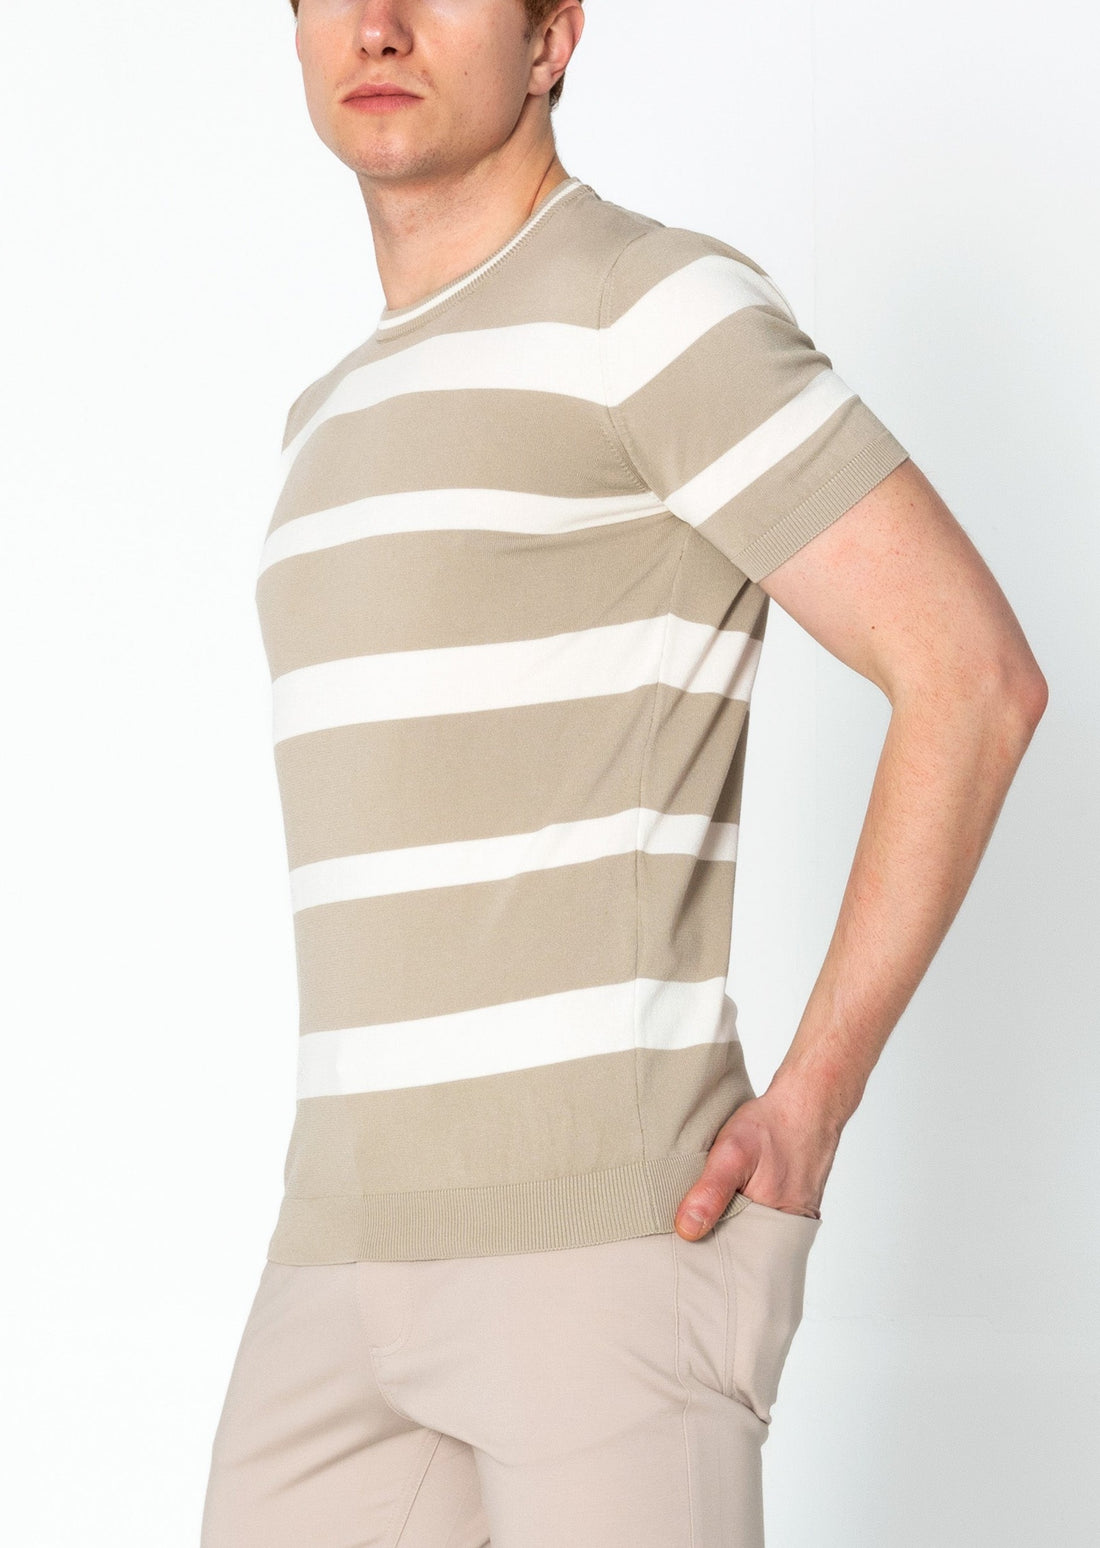 Crew-neck Knitted Striped Shirt - Dark Beige